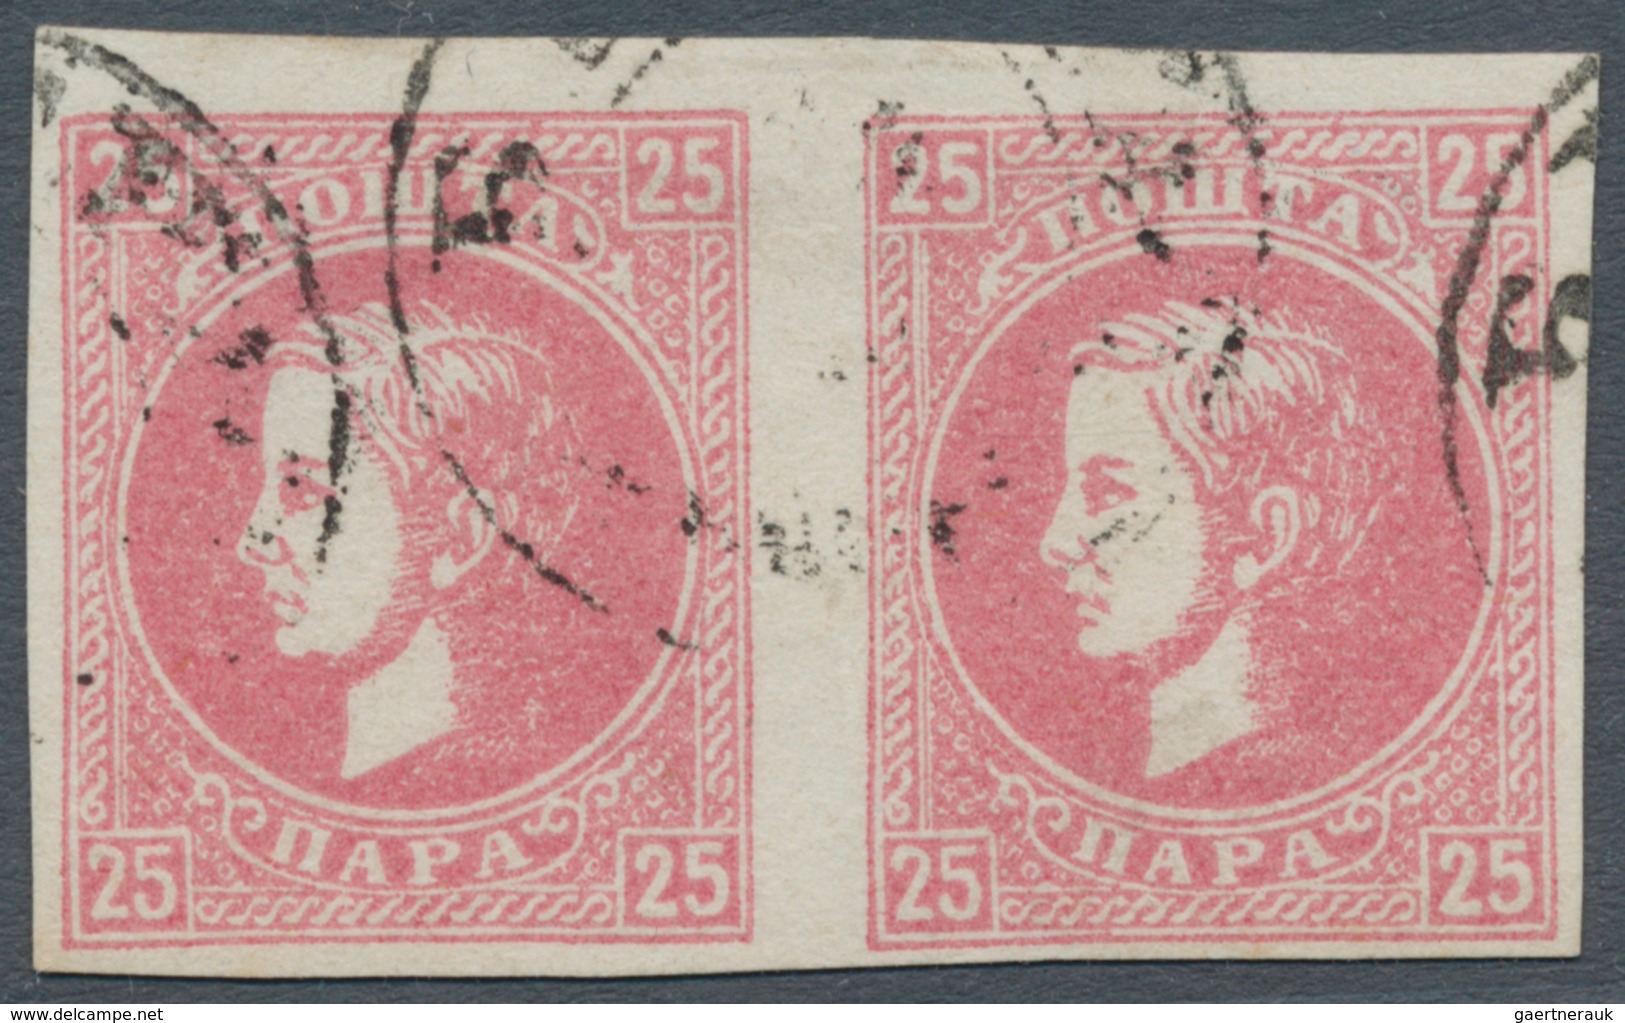 Serbien: 1872/1873, 25pa. Rose, IMPERFORATE Horizontal Pair, Fine Used. - Serbien